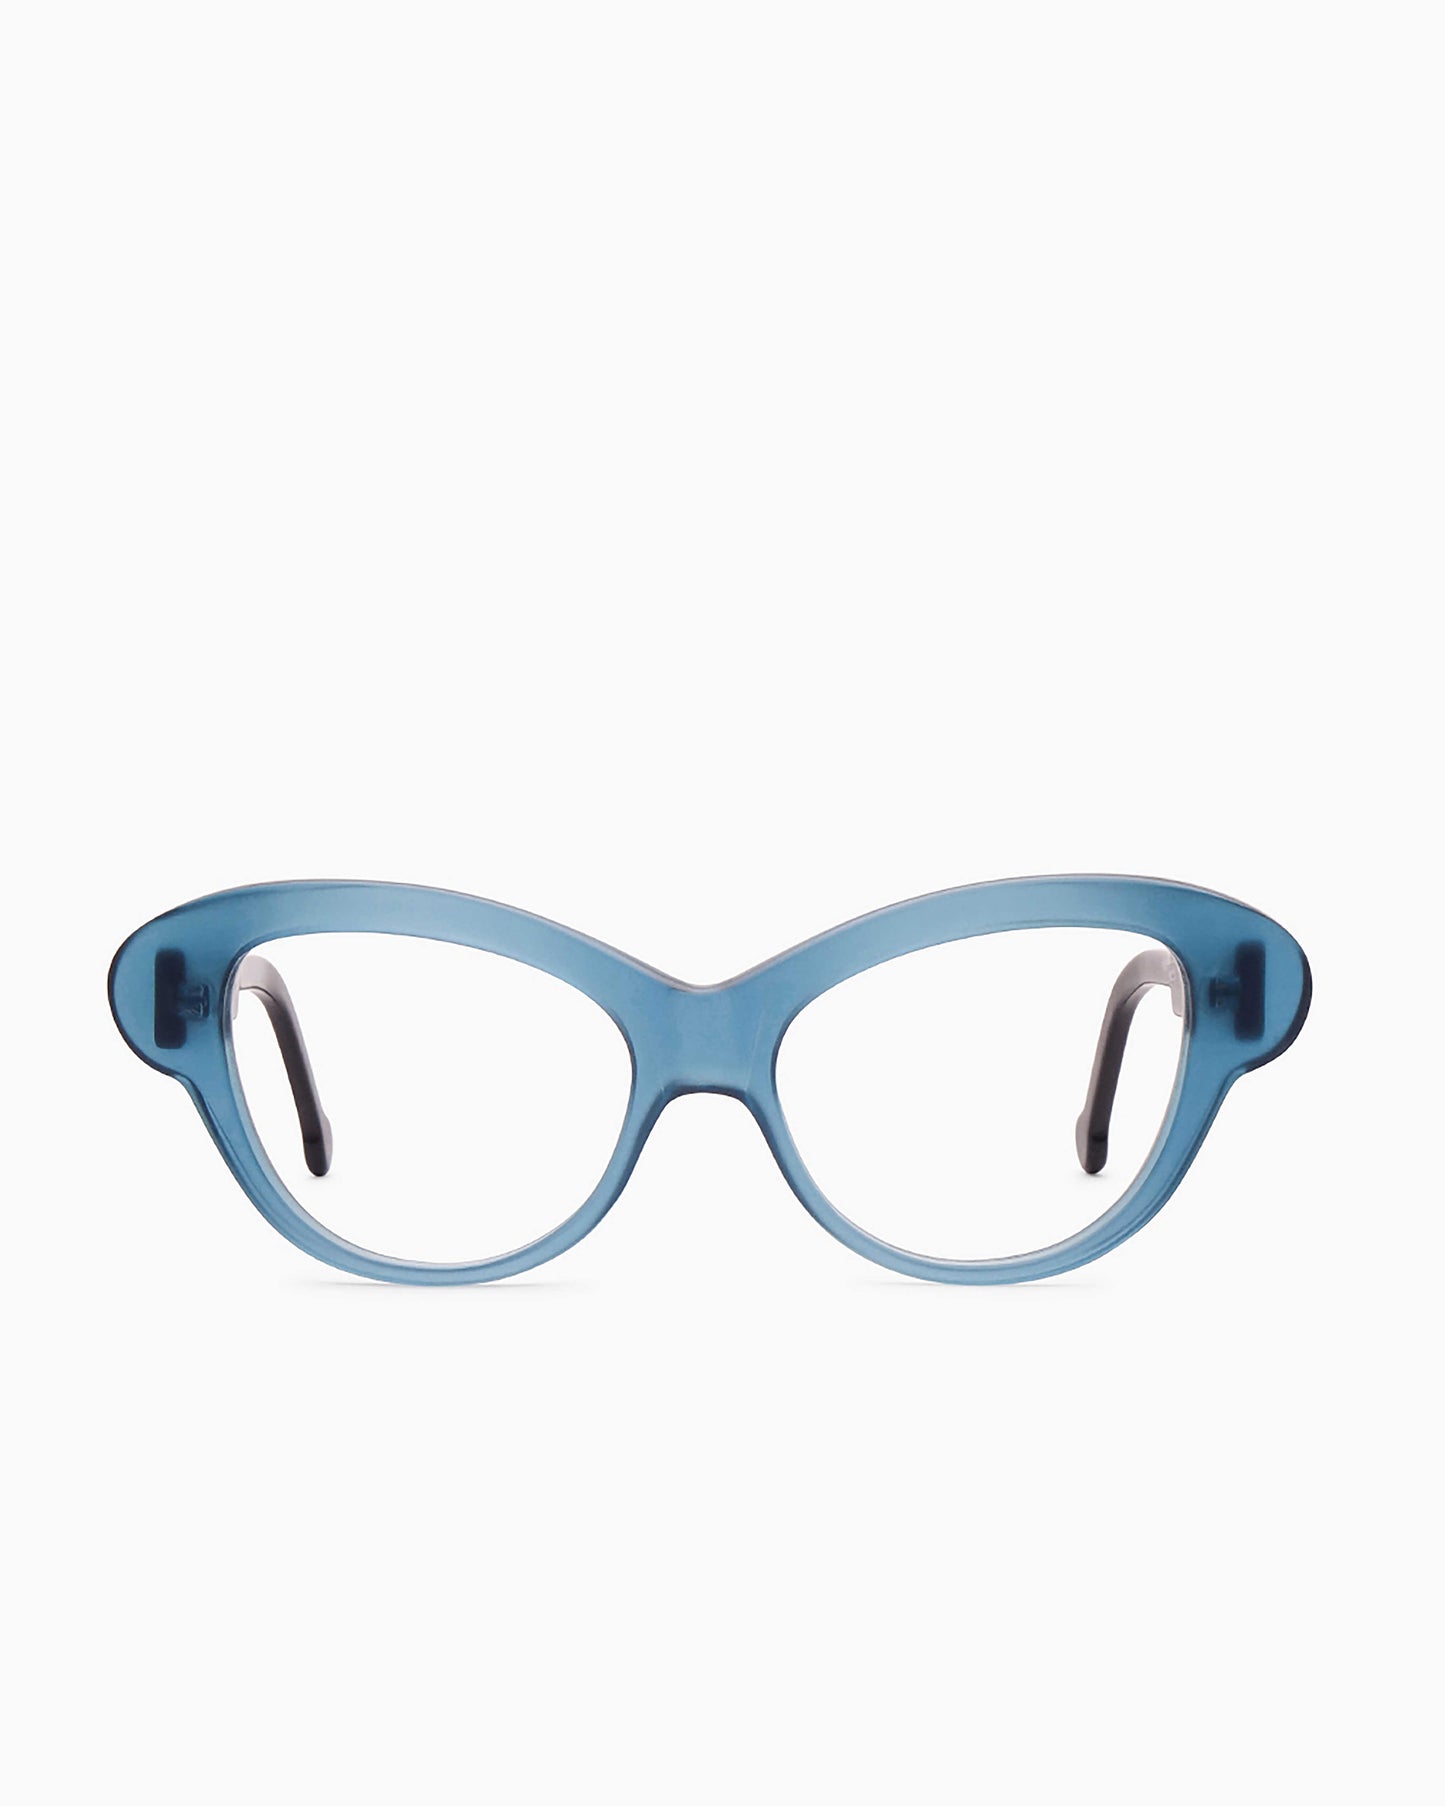 Marie-Sophie Dion - Perrier - Blu | Bar à lunettes